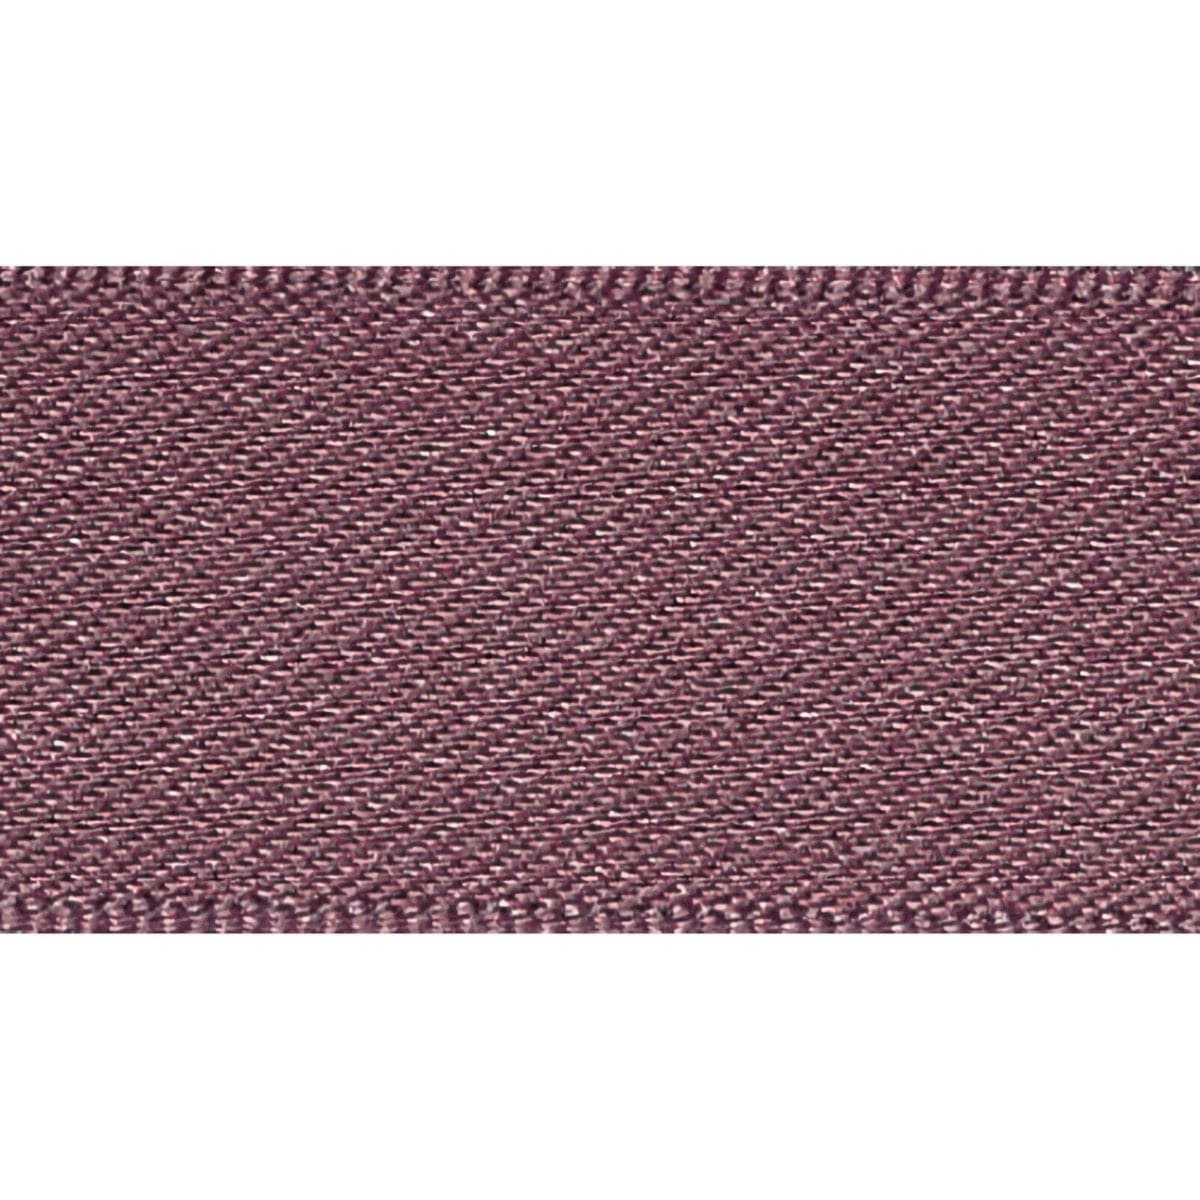 Double Faced Satin Ribbon Grape purple: 7mm wide. Price per metre.